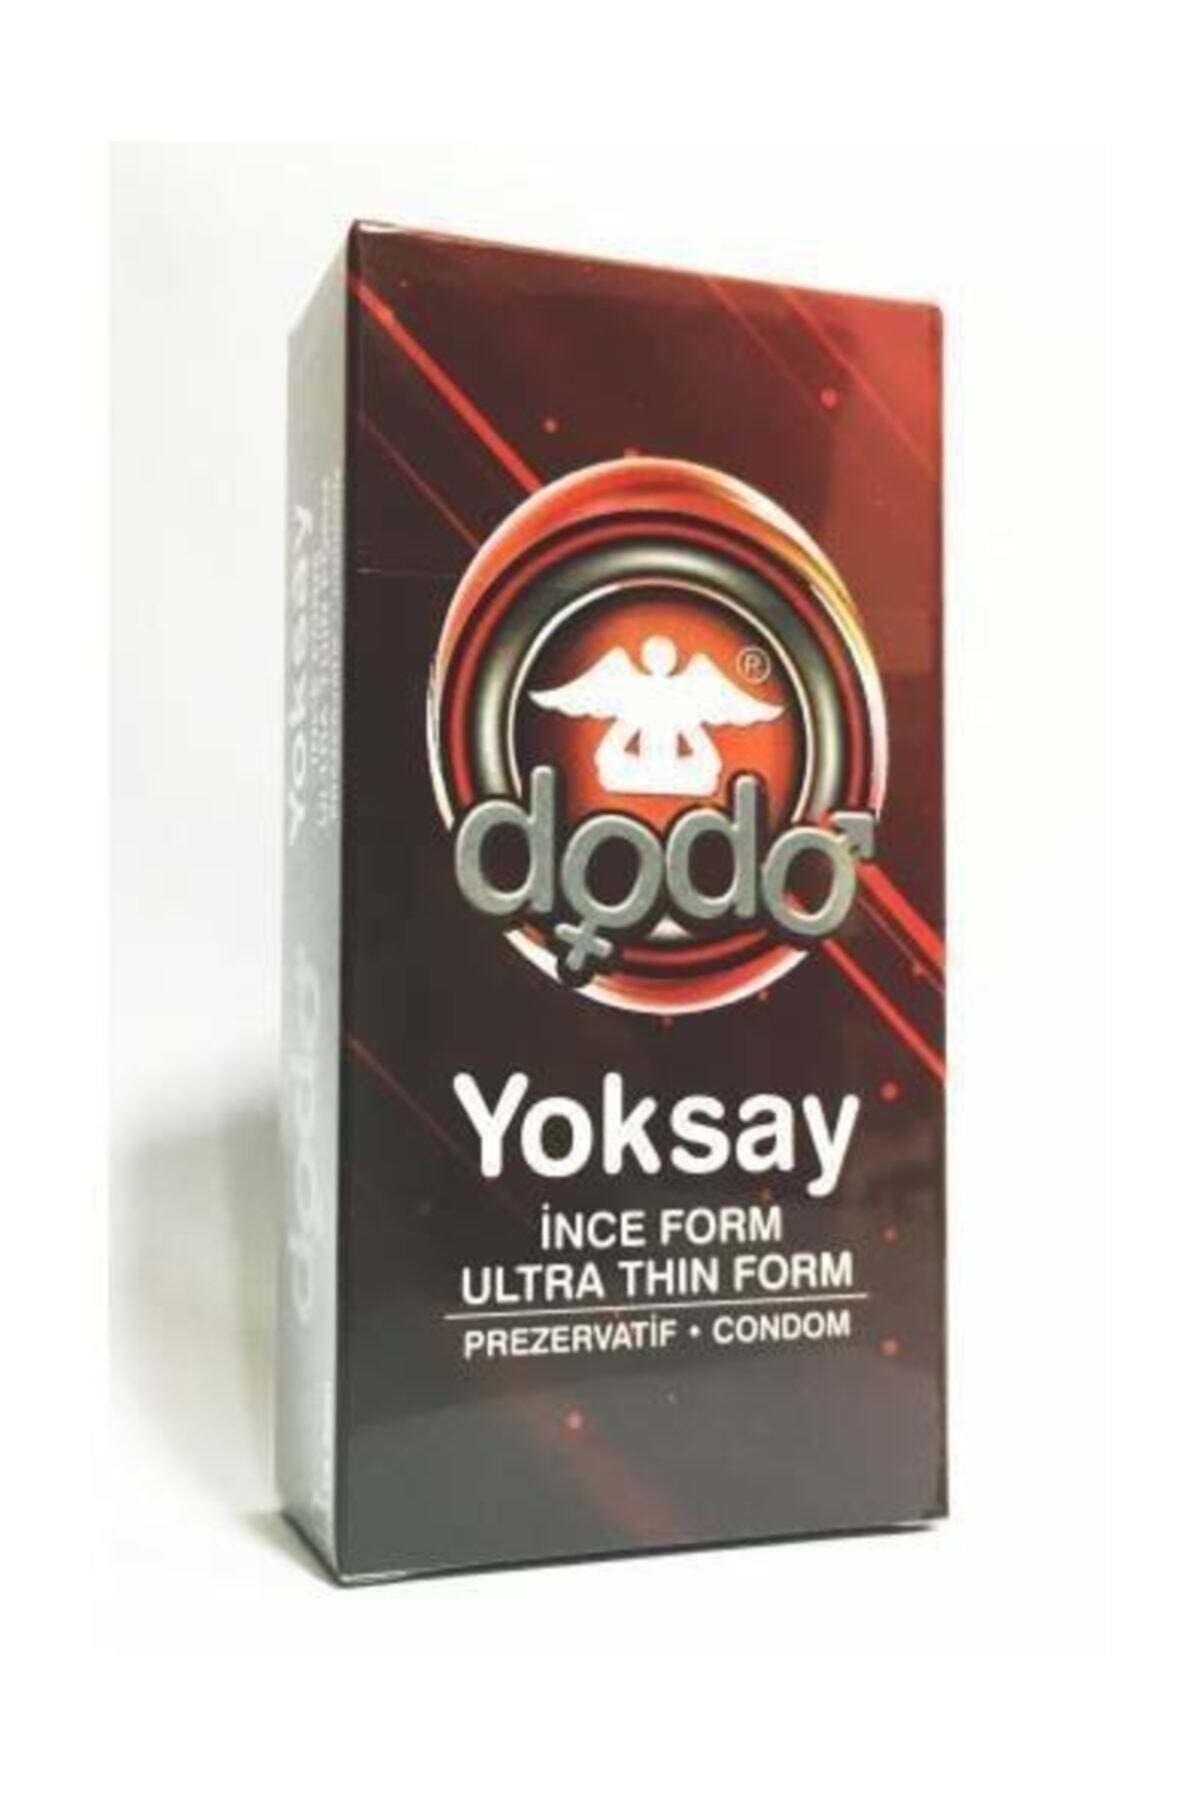 Dodo Prezervatif 12li Yoksay Serhat0180